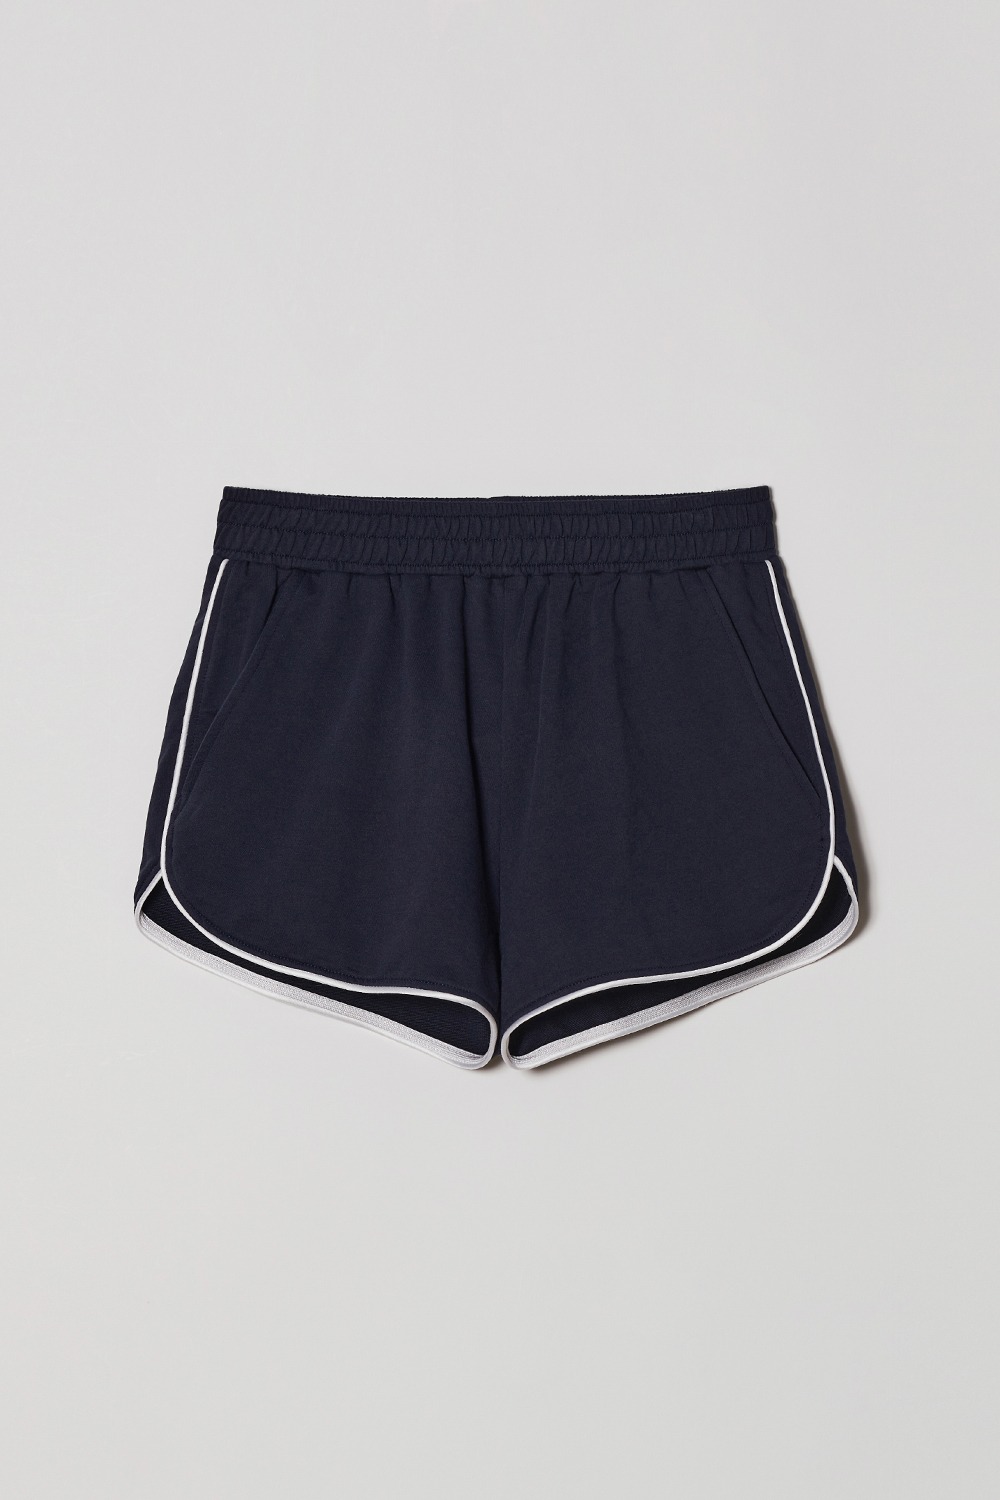 [3차]PVIL Dolphin Shorts(Navy)